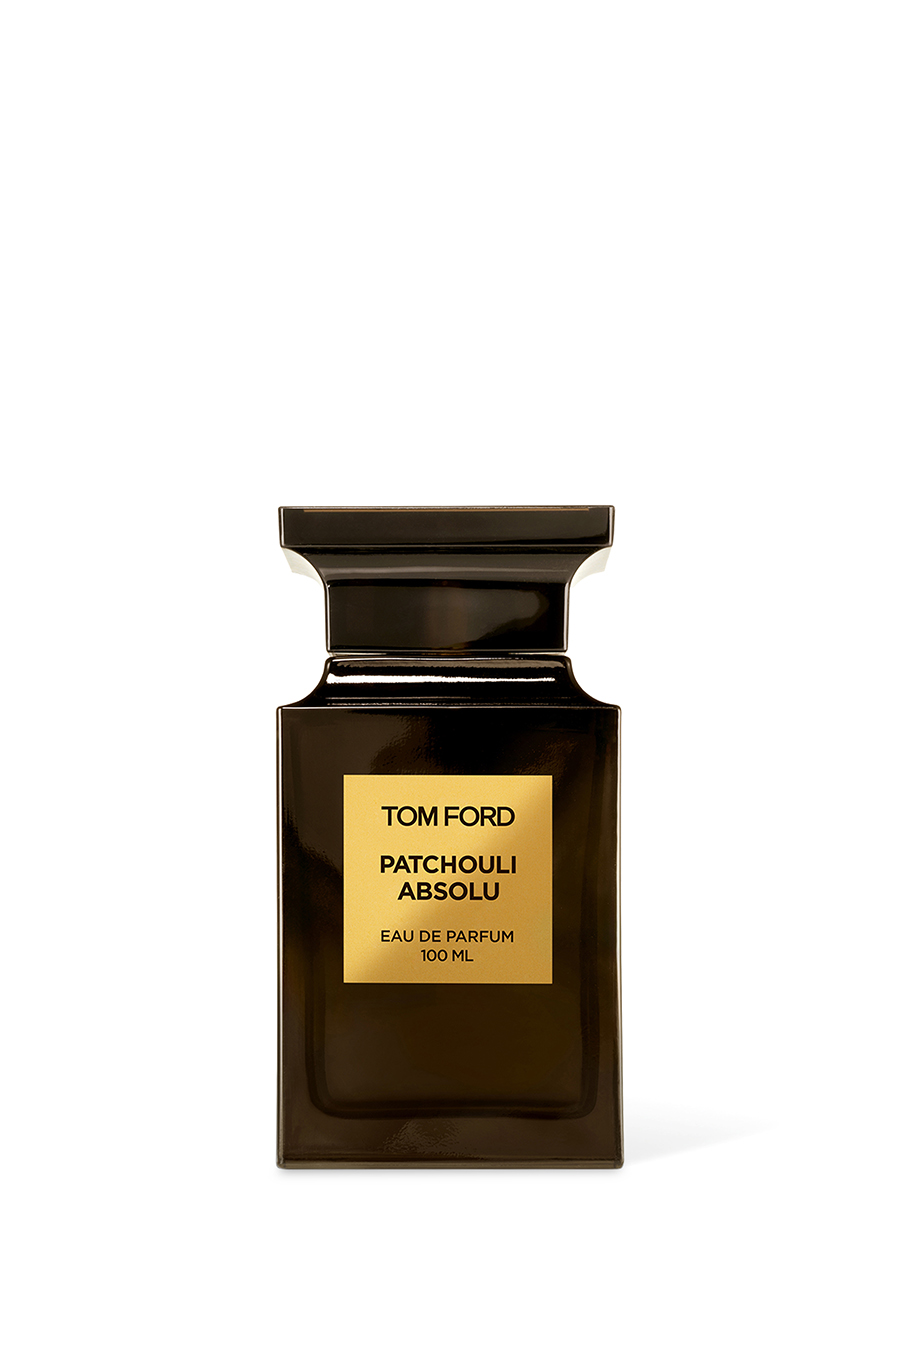 Buy Tom Ford Patchouli Absolu Eau de Parfum for Unisex | Bloomingdale's UAE